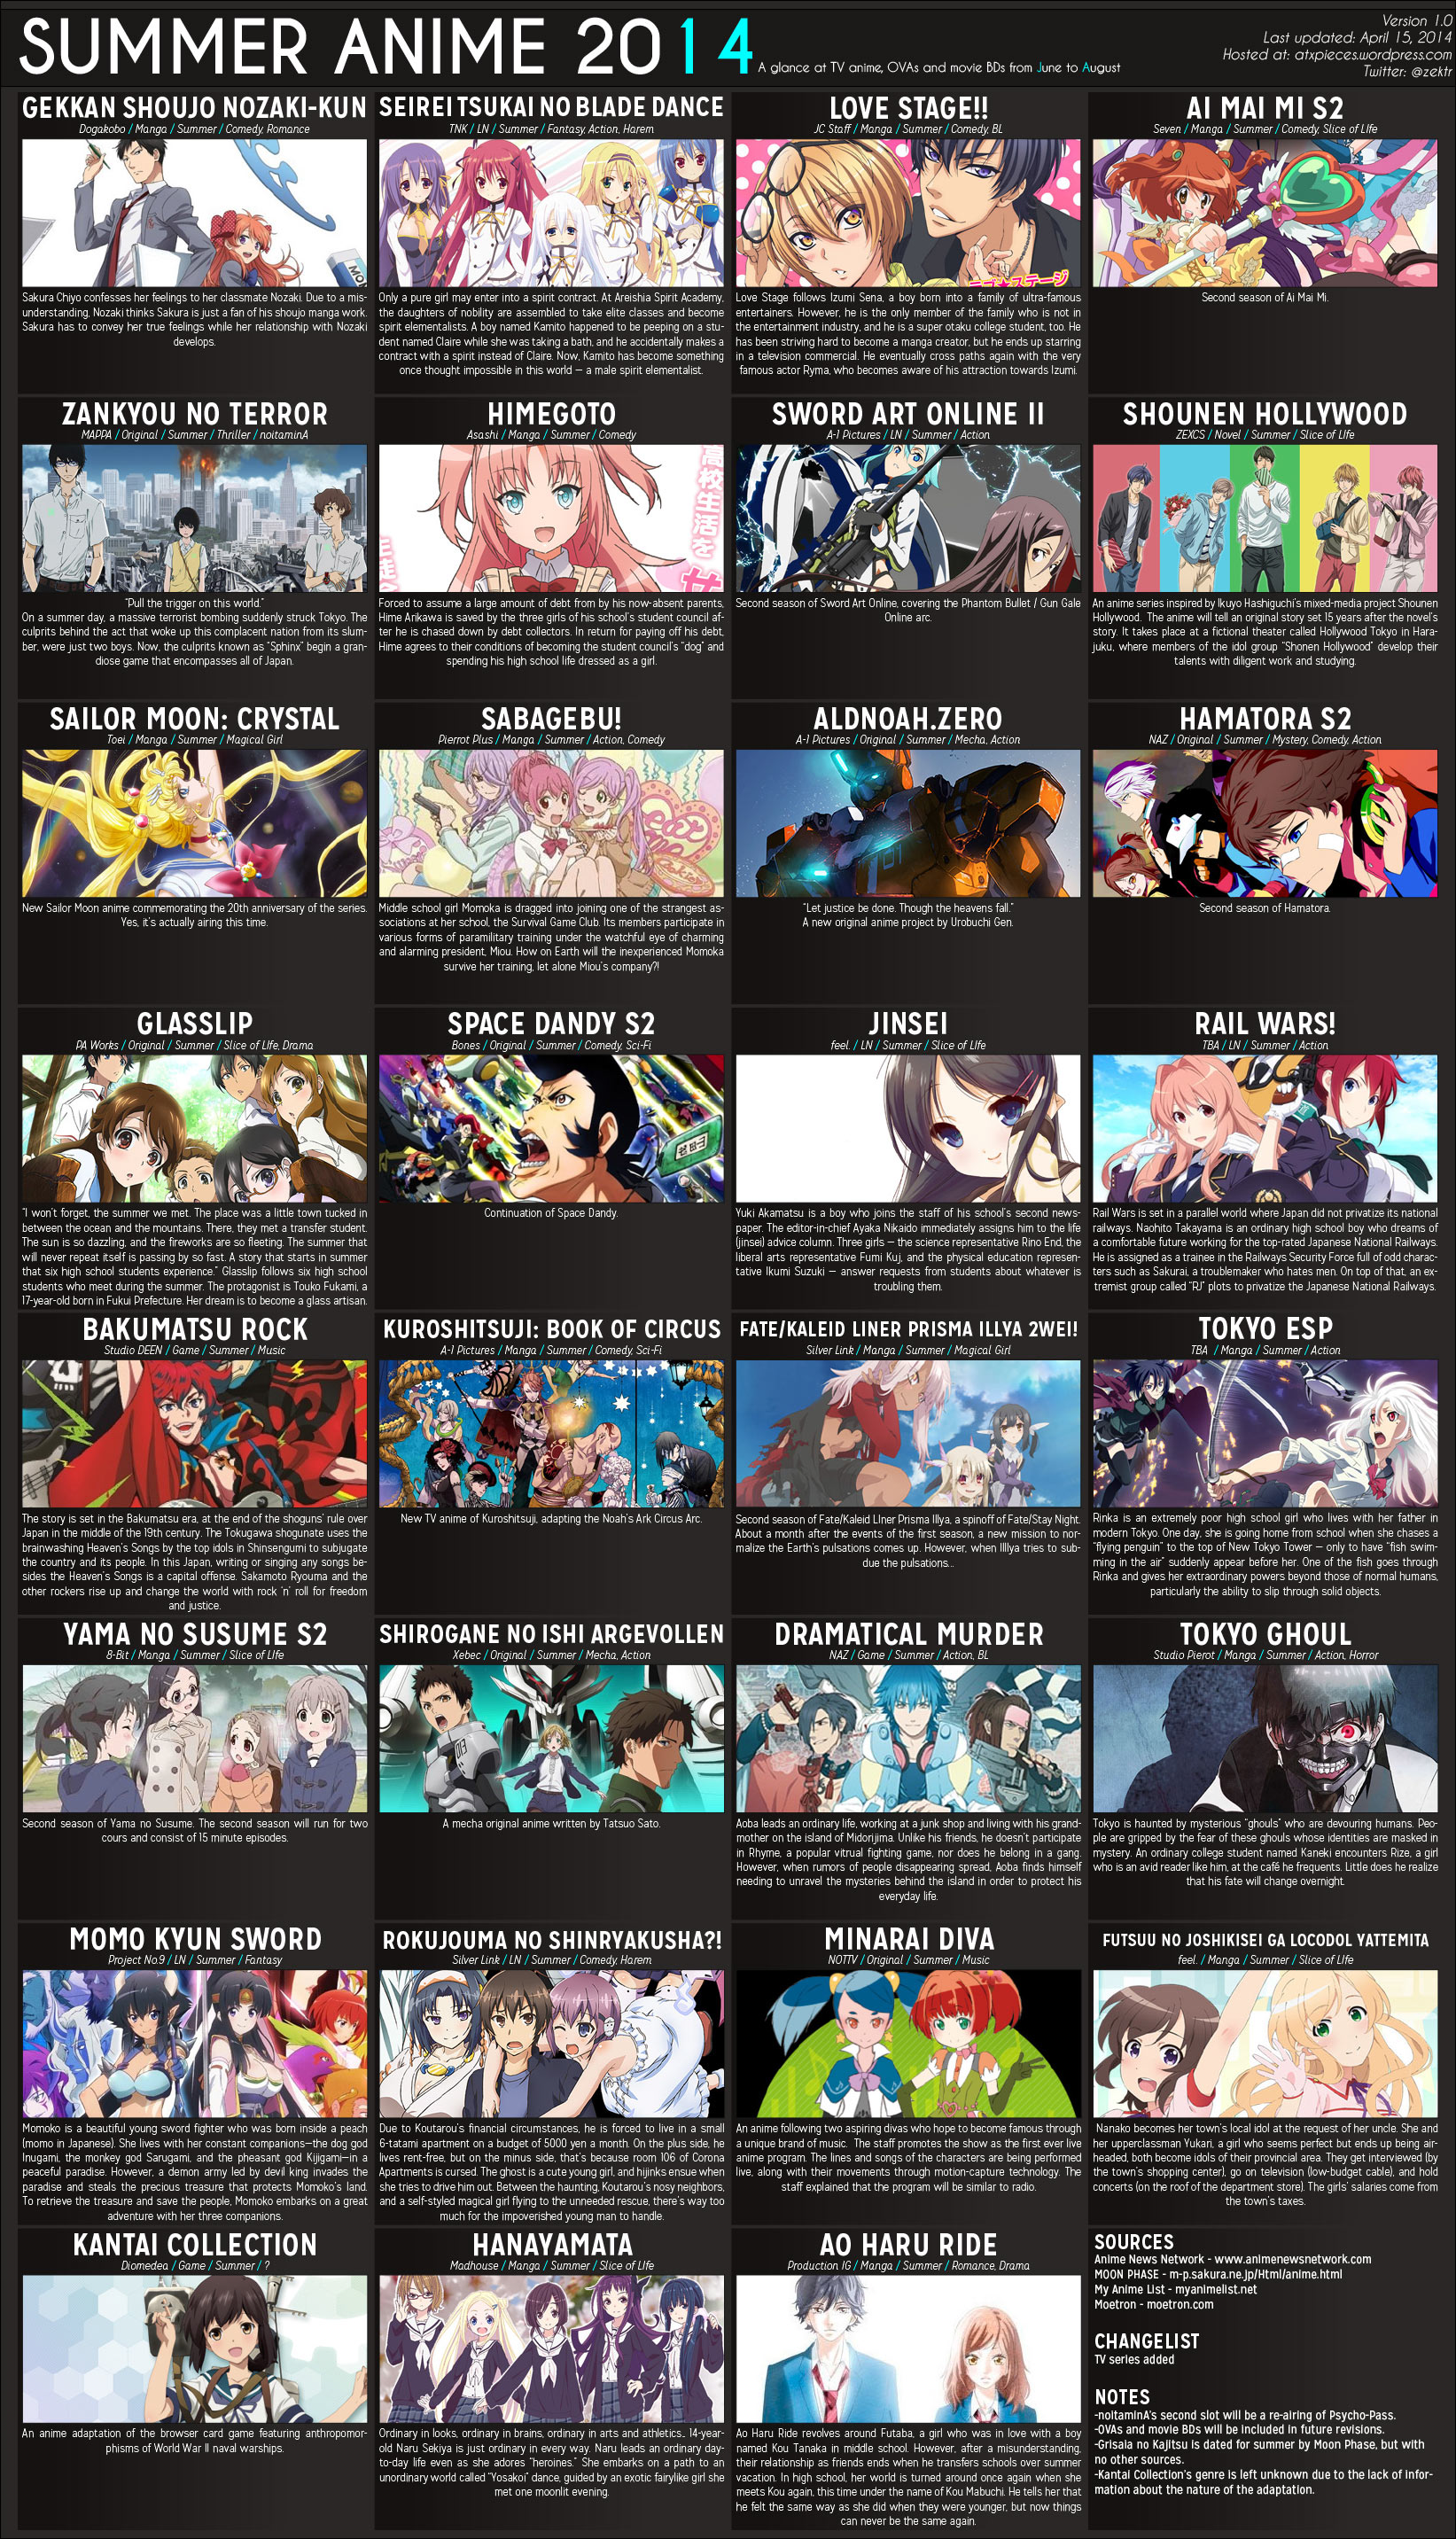 Top 20 Best Anime of 2014  MyAnimeListnet